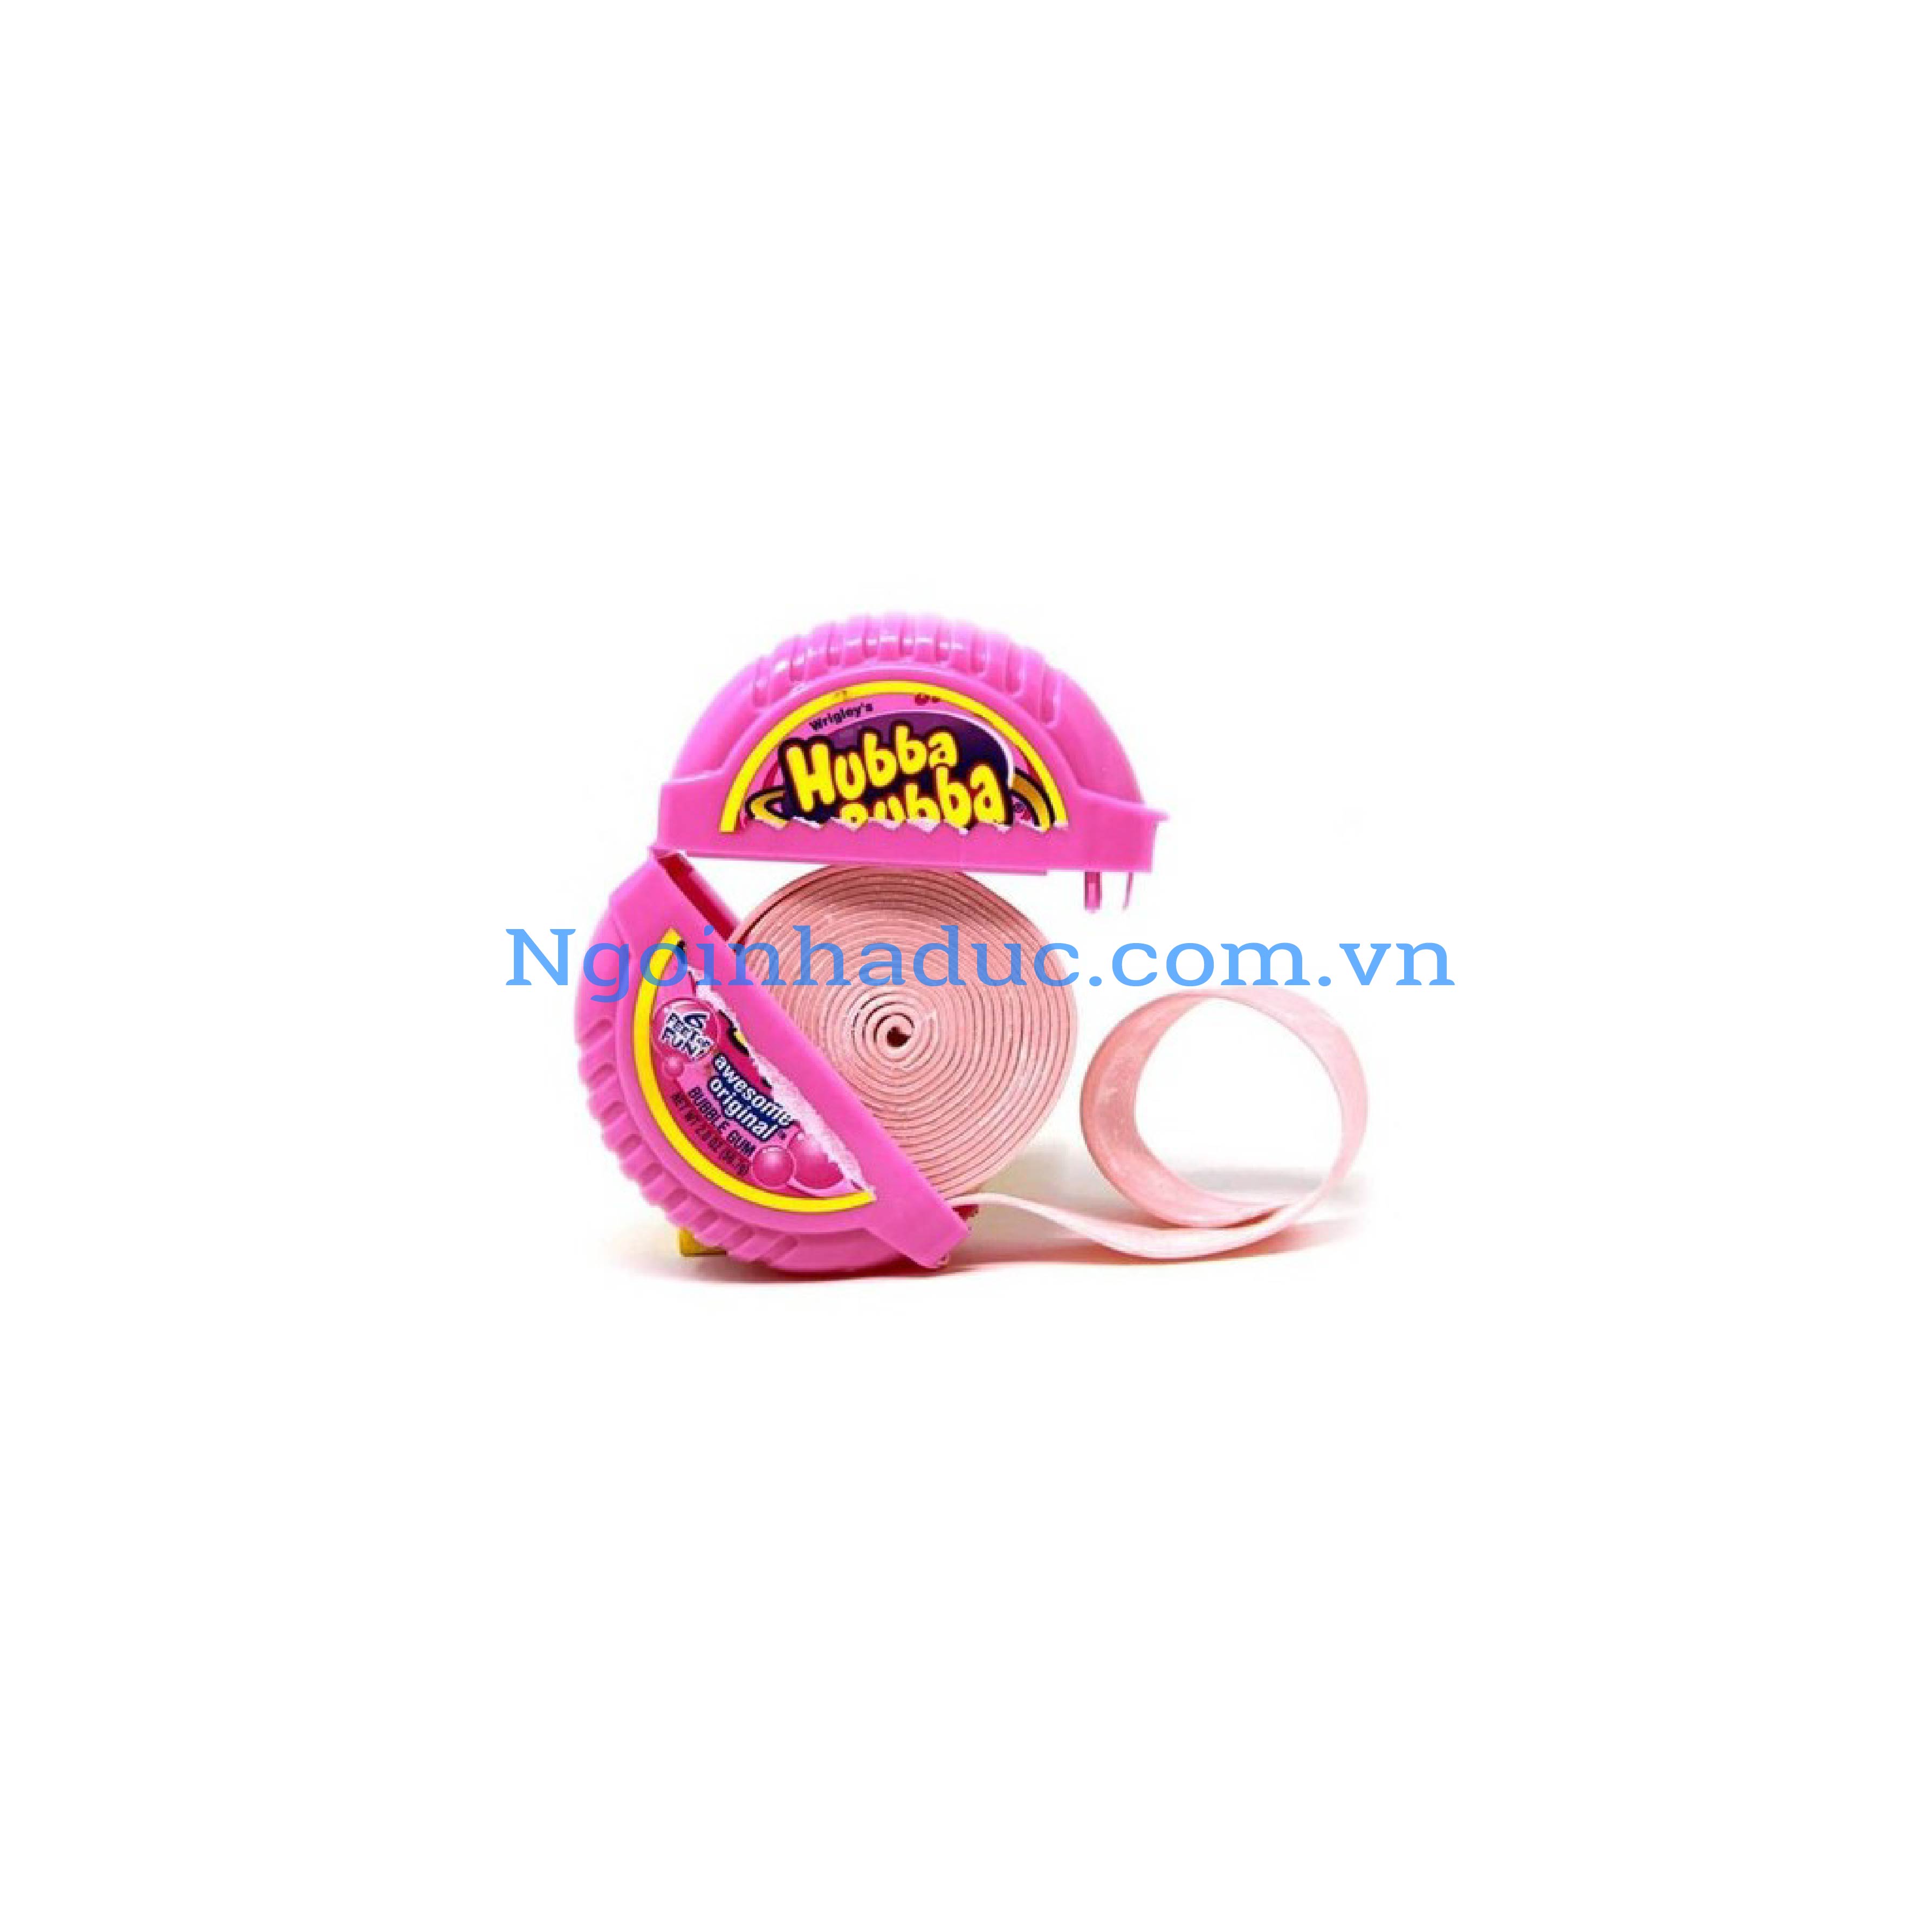 Kẹo cao su cuộn Hubba Bubba màu hồng - Đức (Hộp 56g)